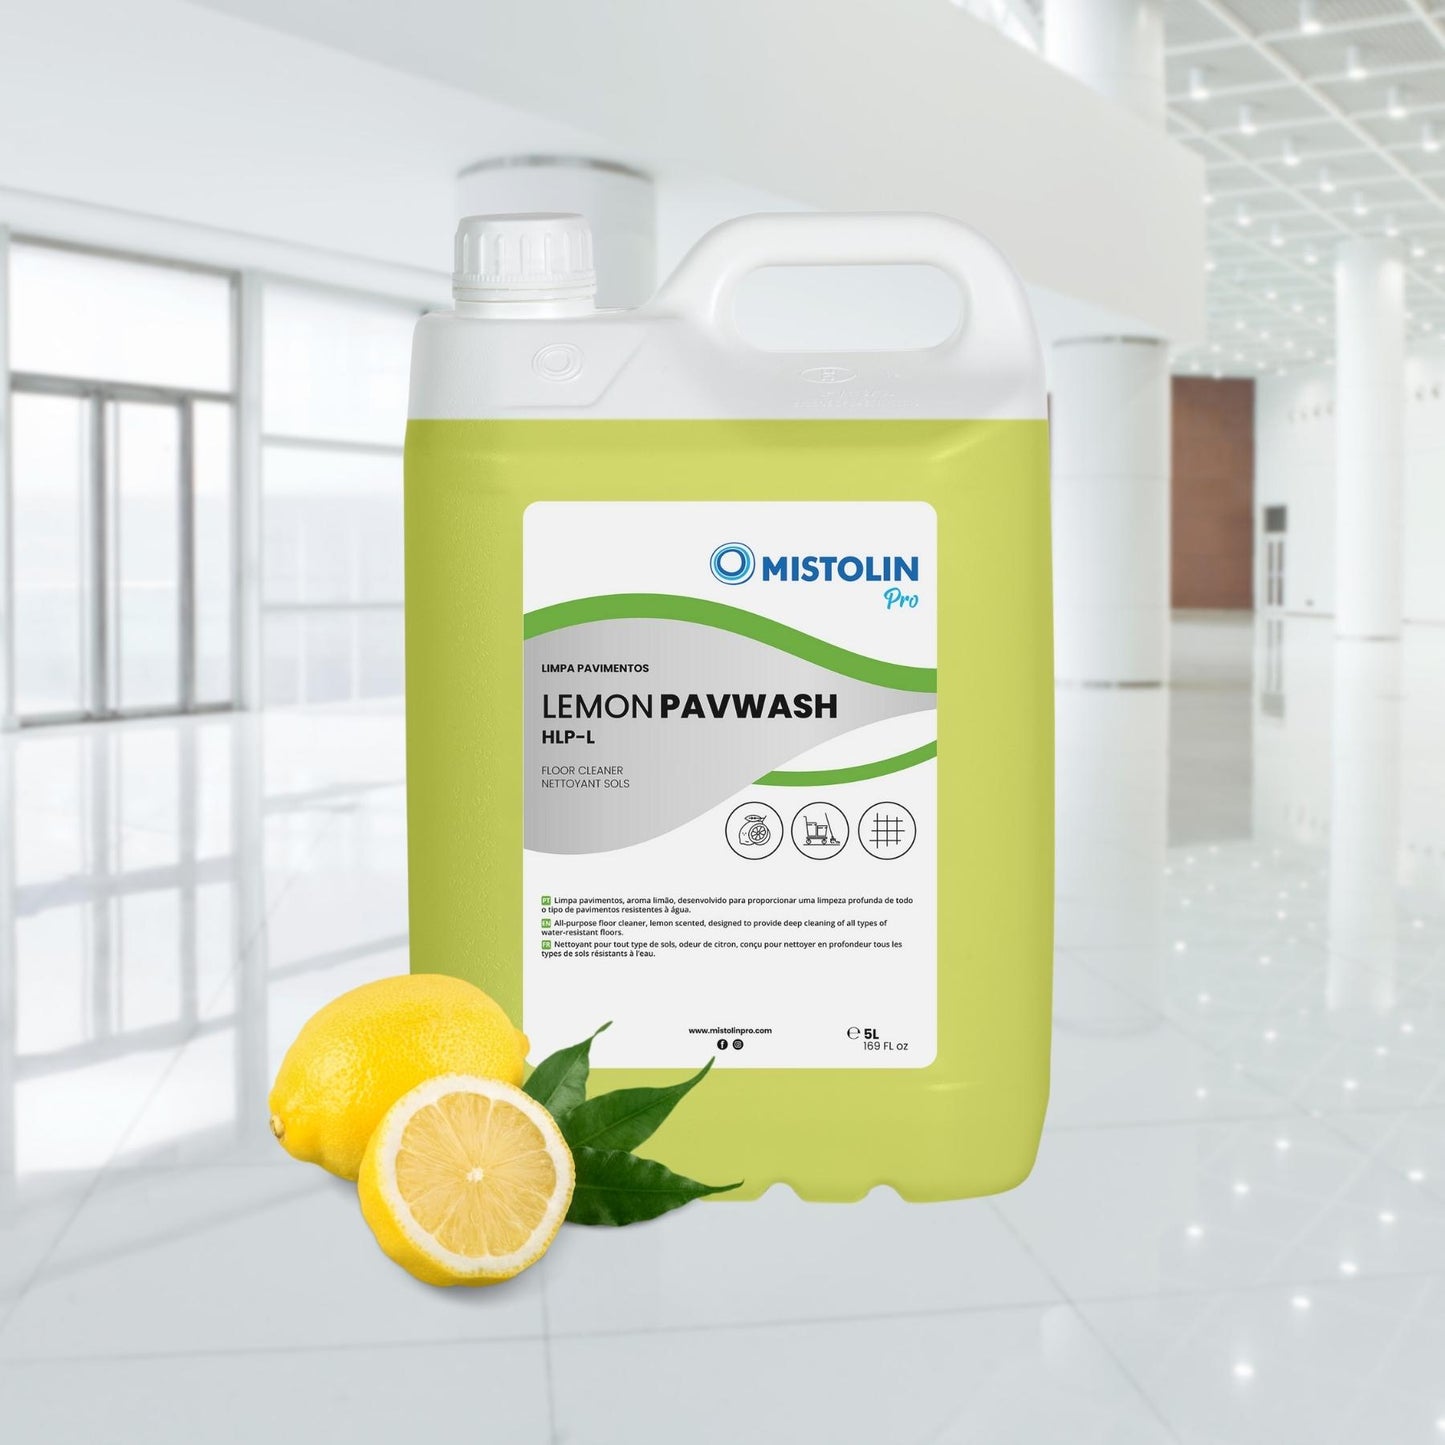 LEMON PAVWASH HLP-L LIMPA PAV LIMAO 5LT, é um detergente limpa pavimentos, aroma a limão, desenvolvido para proporcionar uma limpeza profunda de todo o tipo de pavimentos resistentes à água.